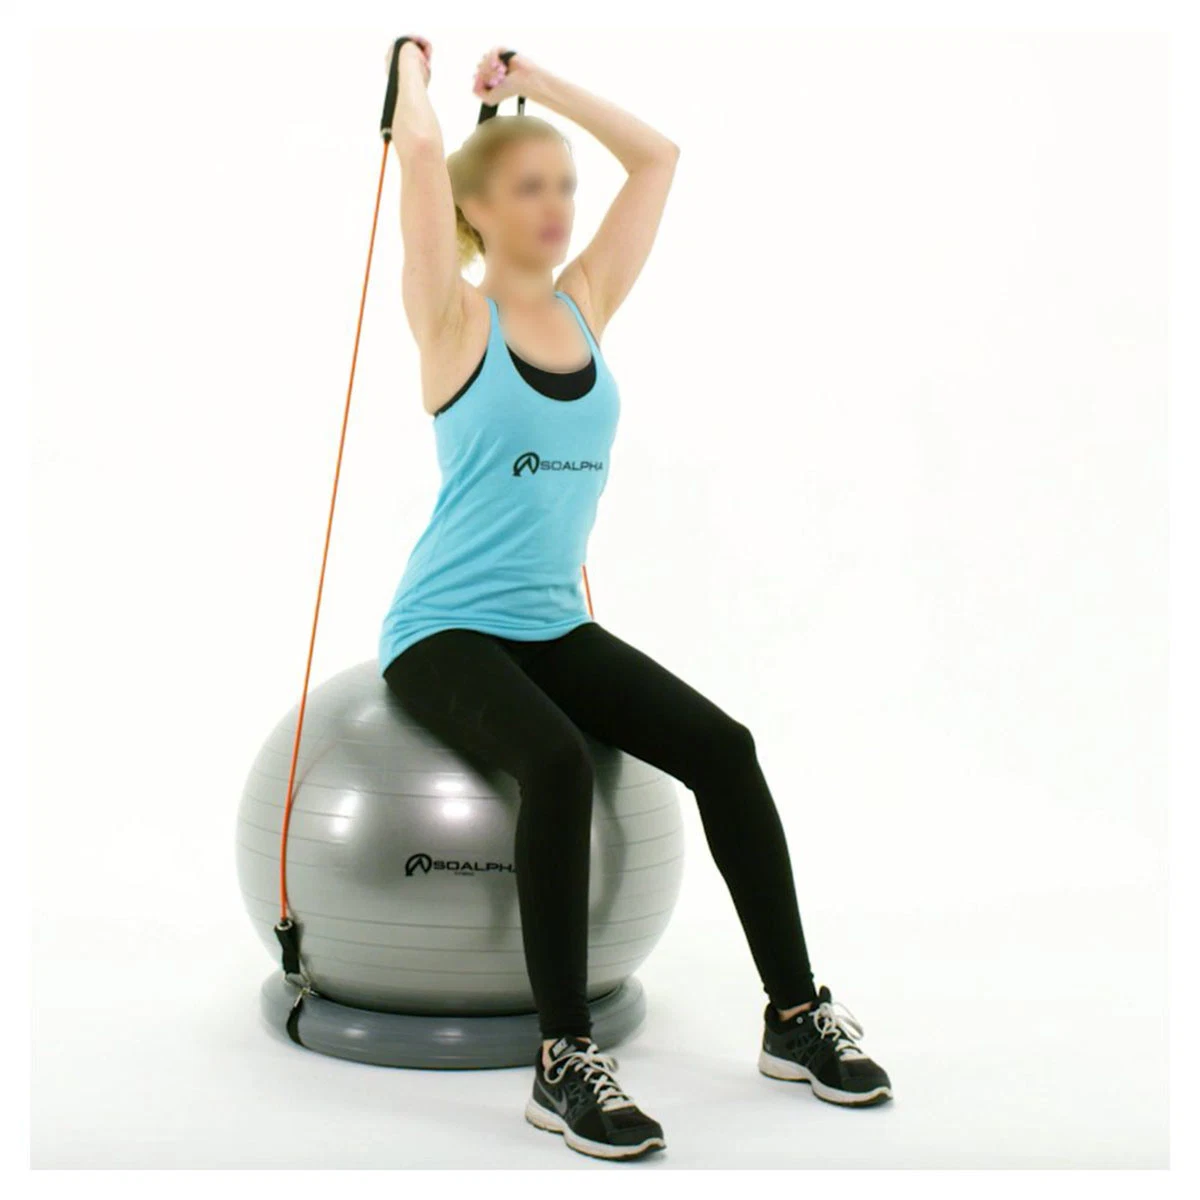 Yoga und Pilates Übung Ball Chair System 65 cm Ball mit Stability Base und Workout Widerstandsbänder für Fitness-Studio, Home oder Office Bl13023